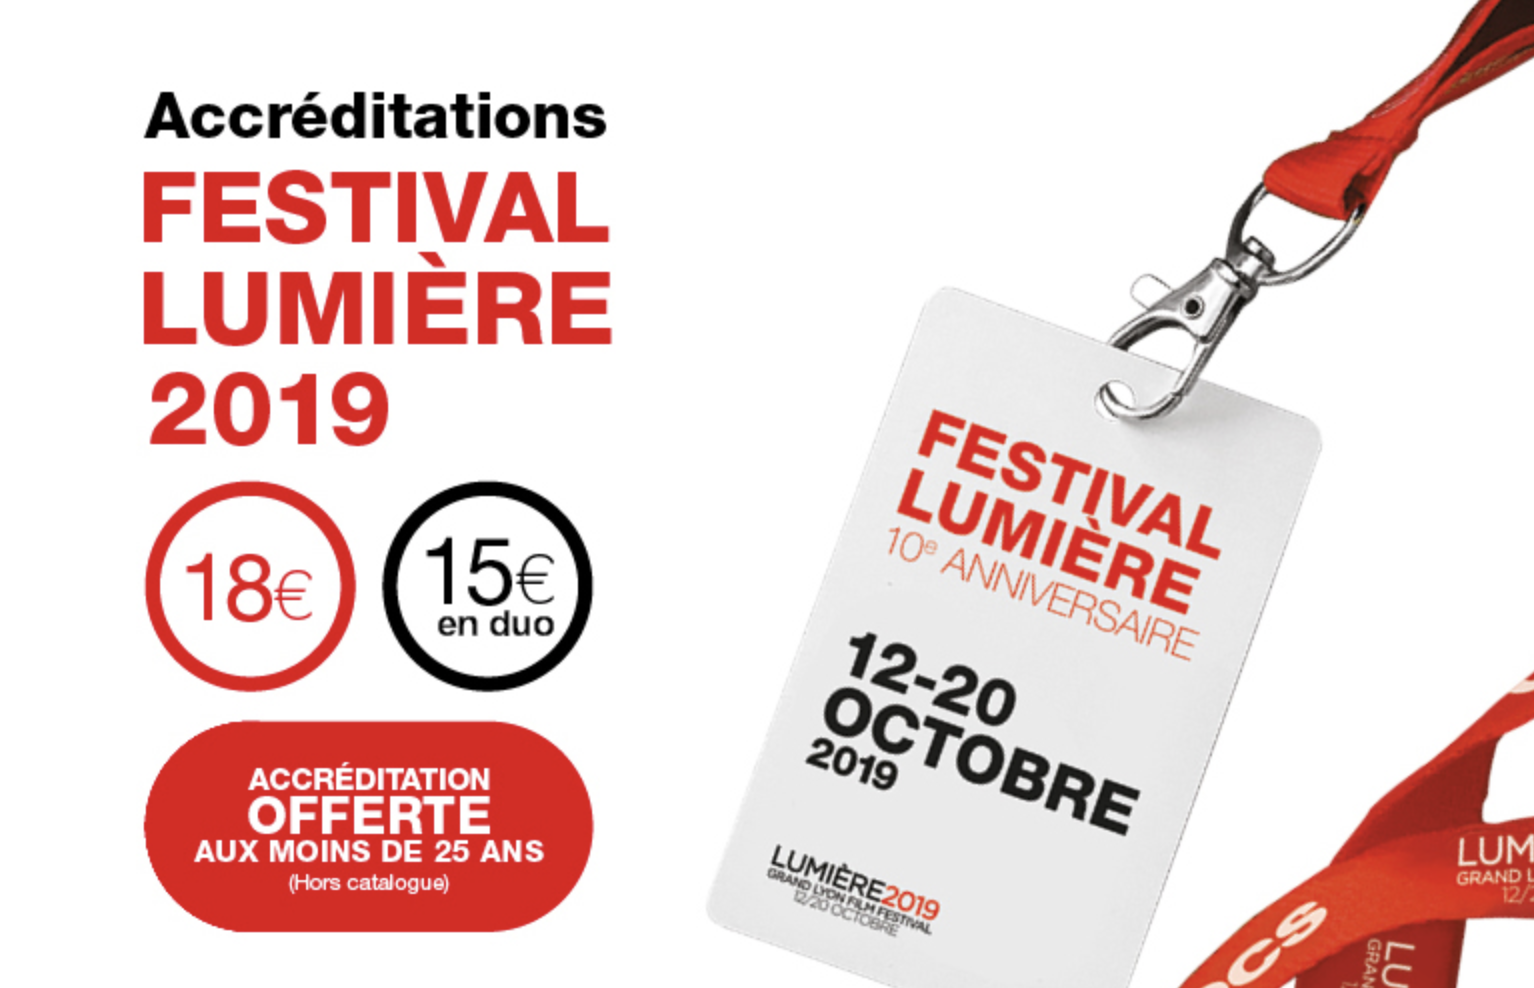 Festival Lumière 2019 : Les accréditations -25 ans !